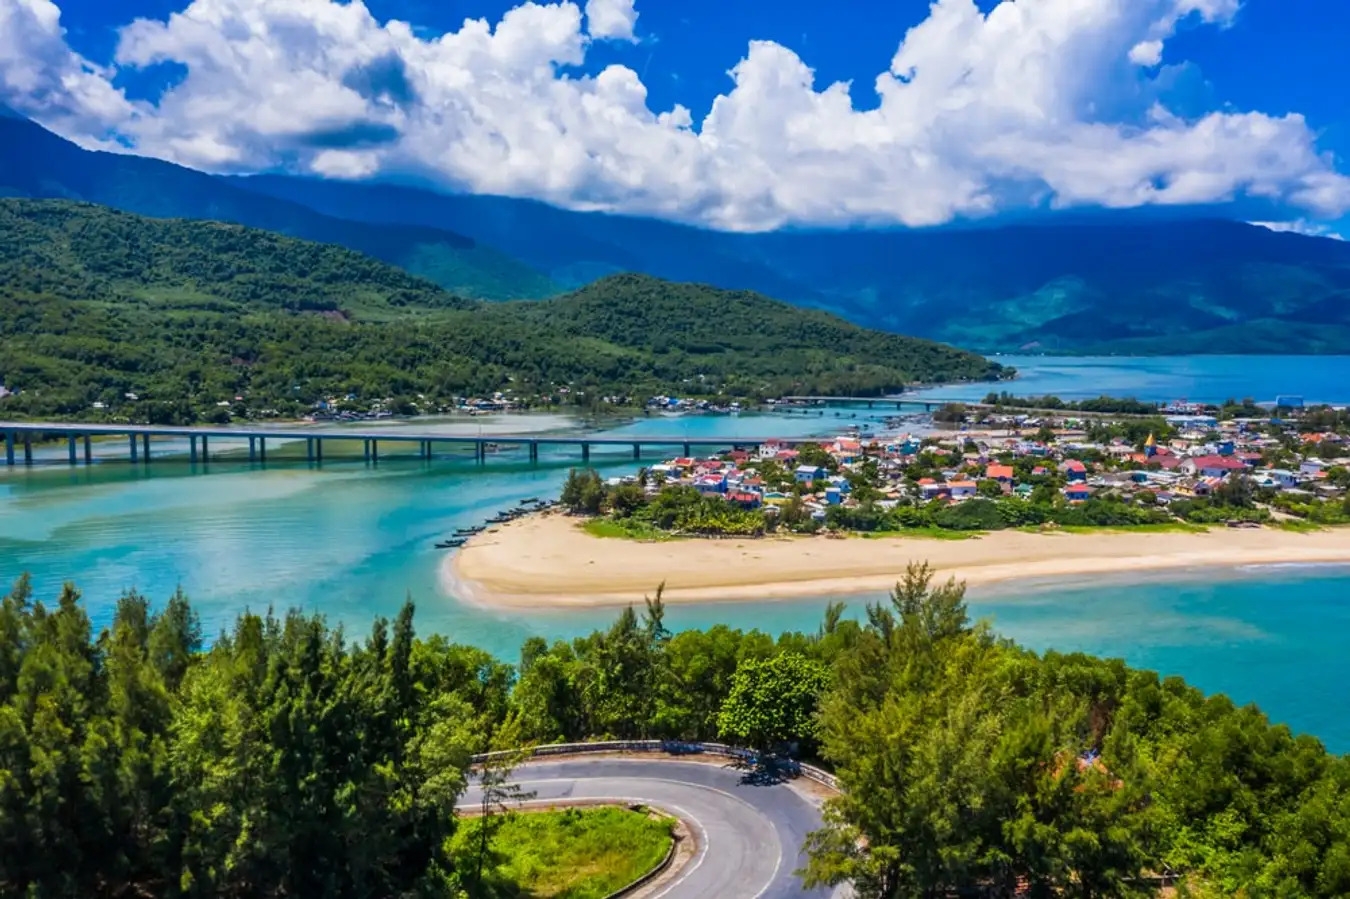 Три привлекательных туристических направления во Вьетнаме, о которых мало кто знает по версии туристического журнала Lonely Planet